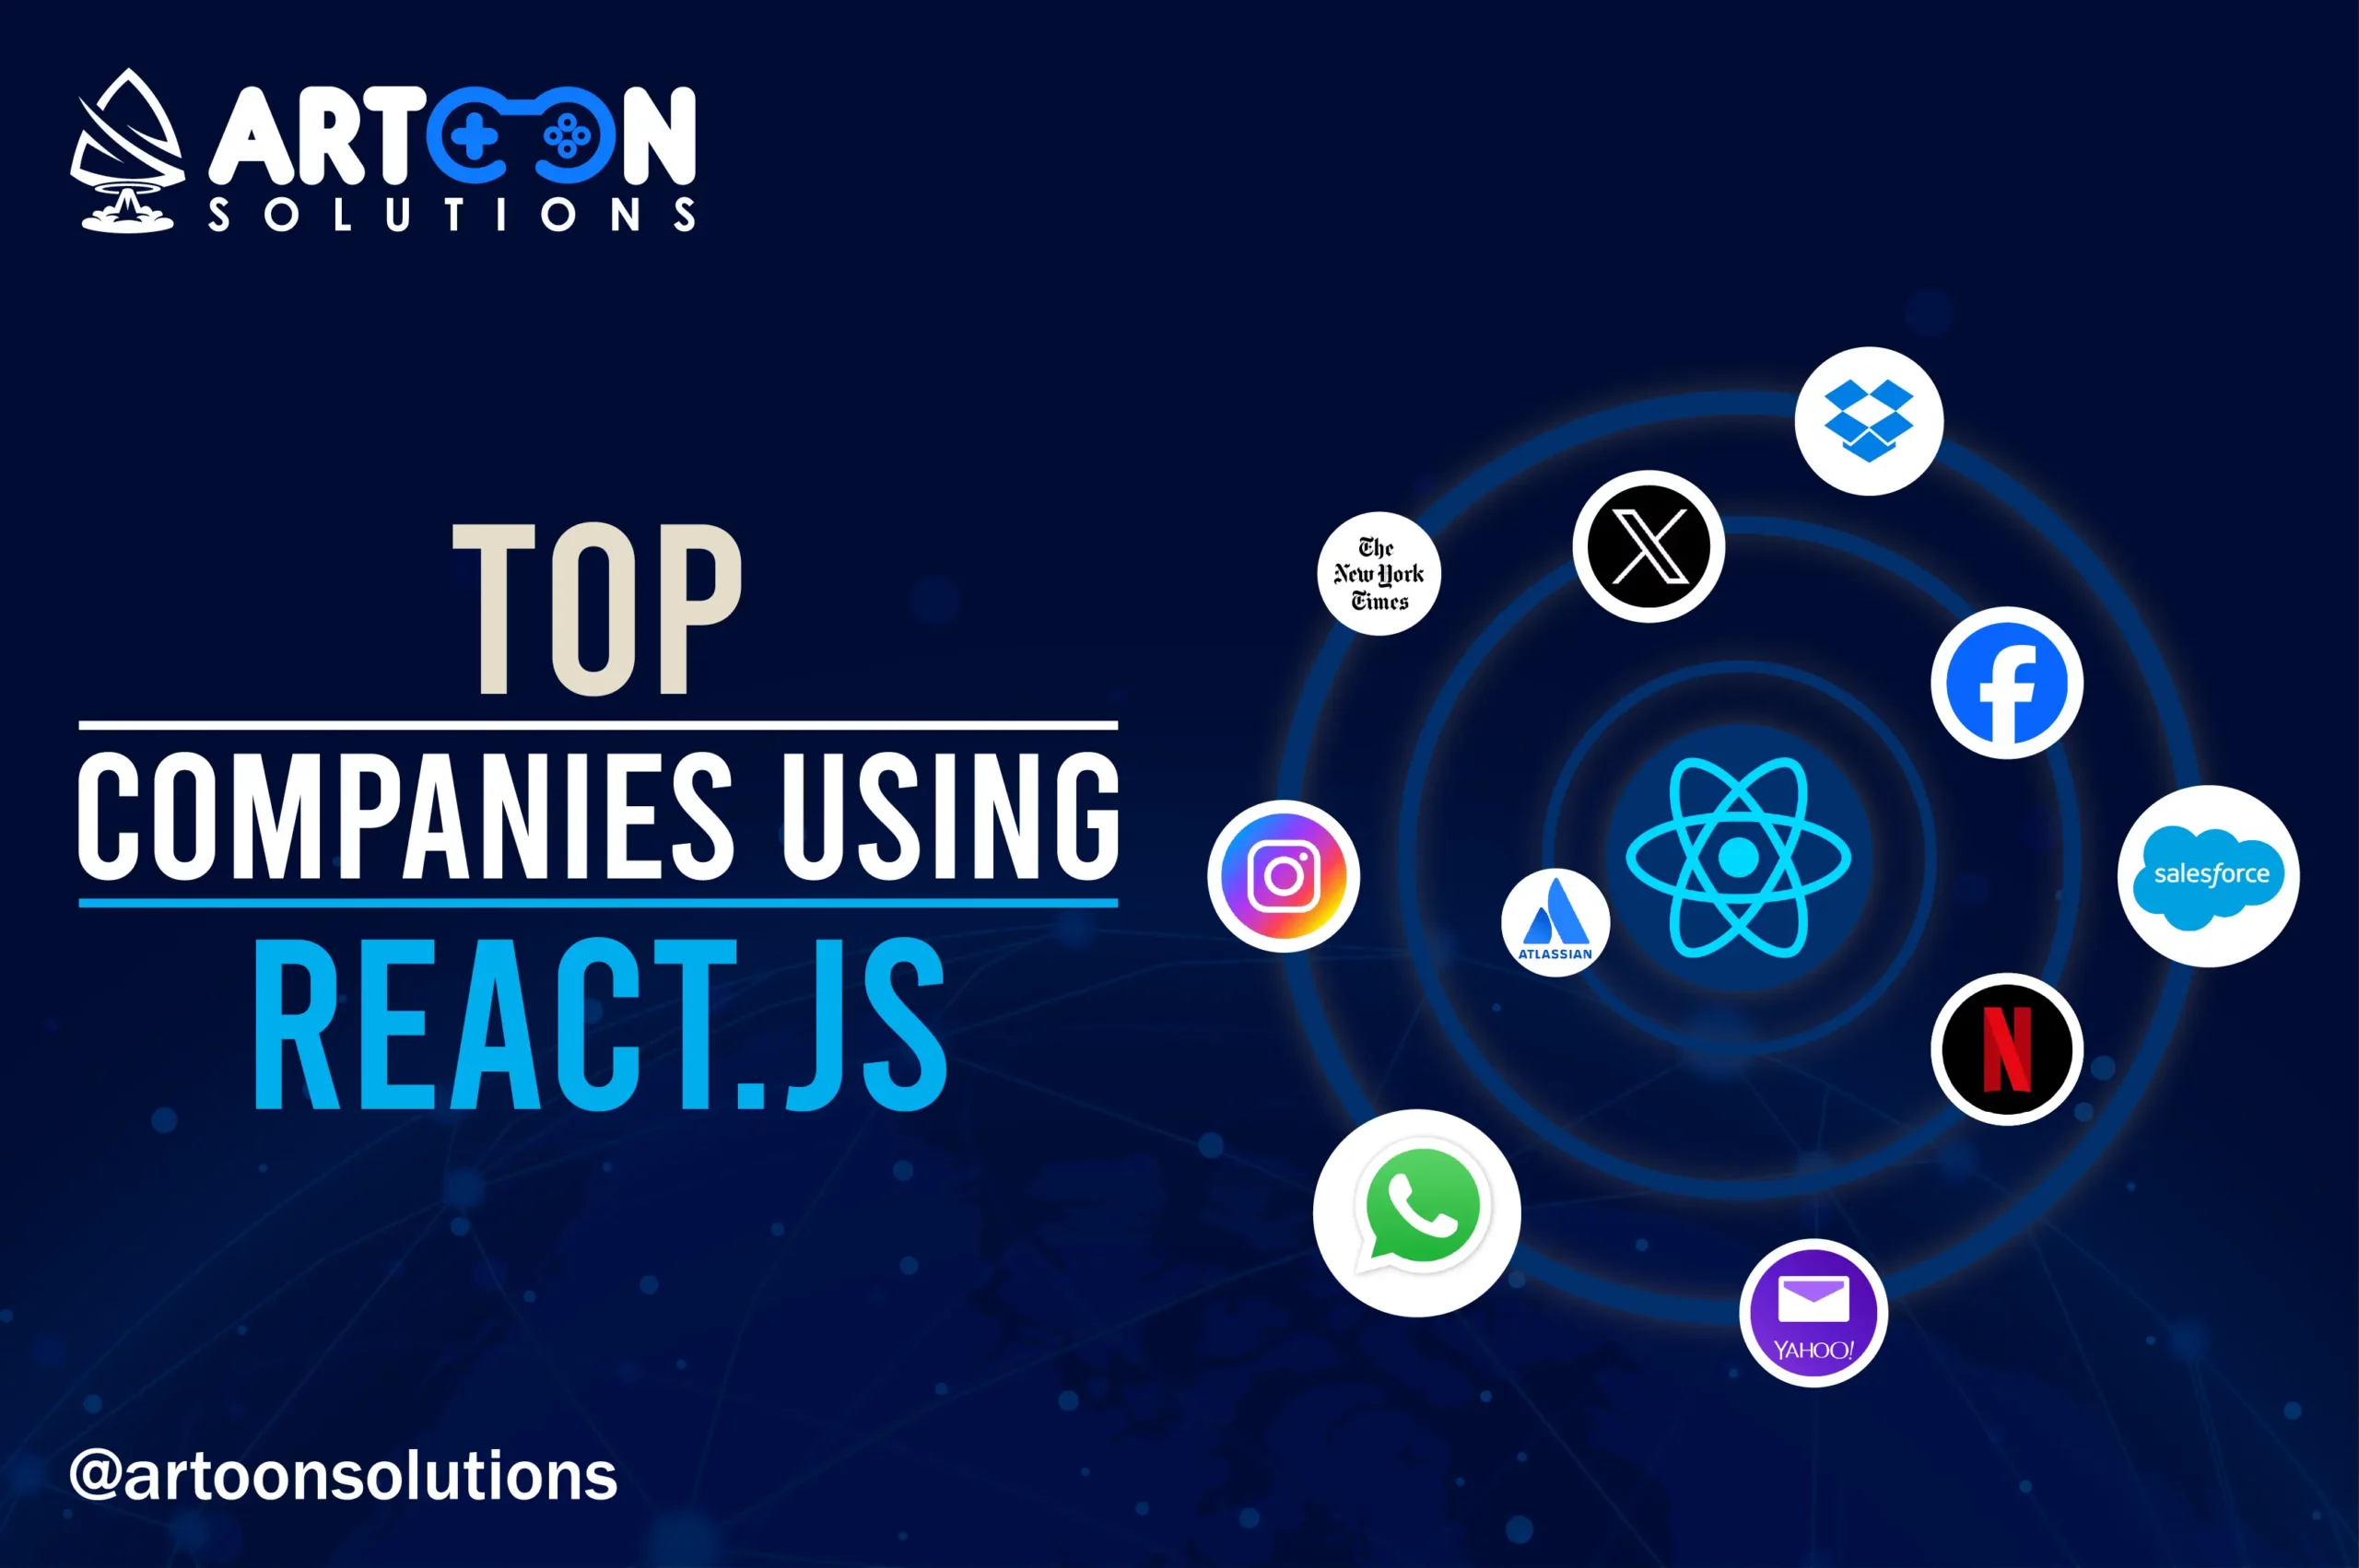 Top Companies Using React.js